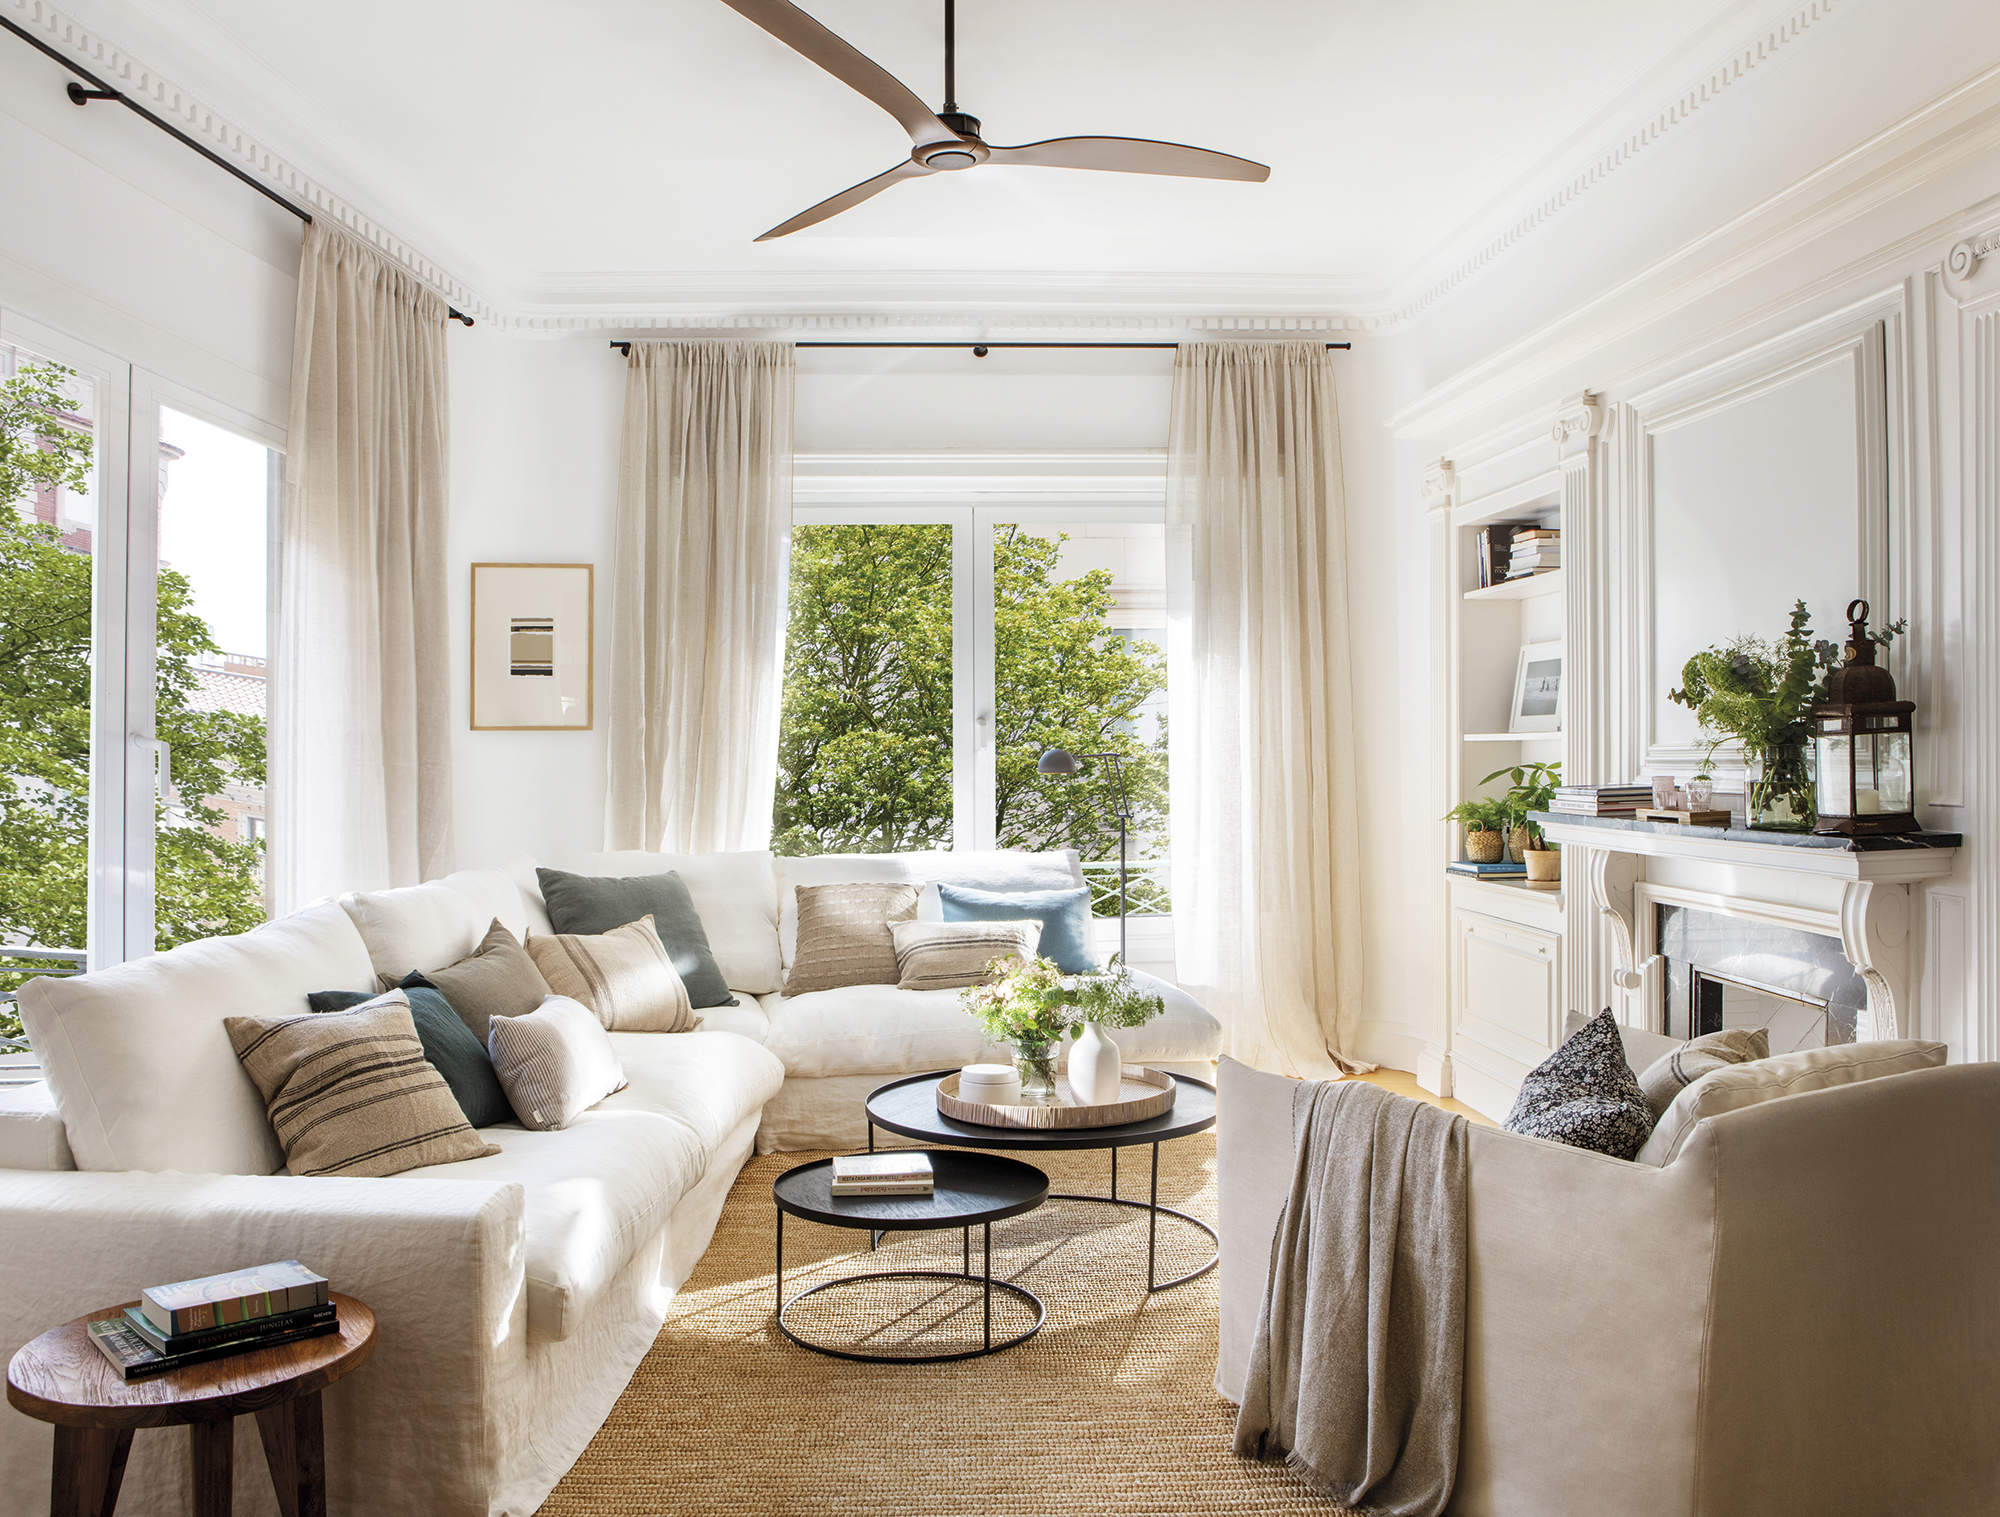 Salón con sofá blanco, alfombra de fibras, butaca beige y molduras.